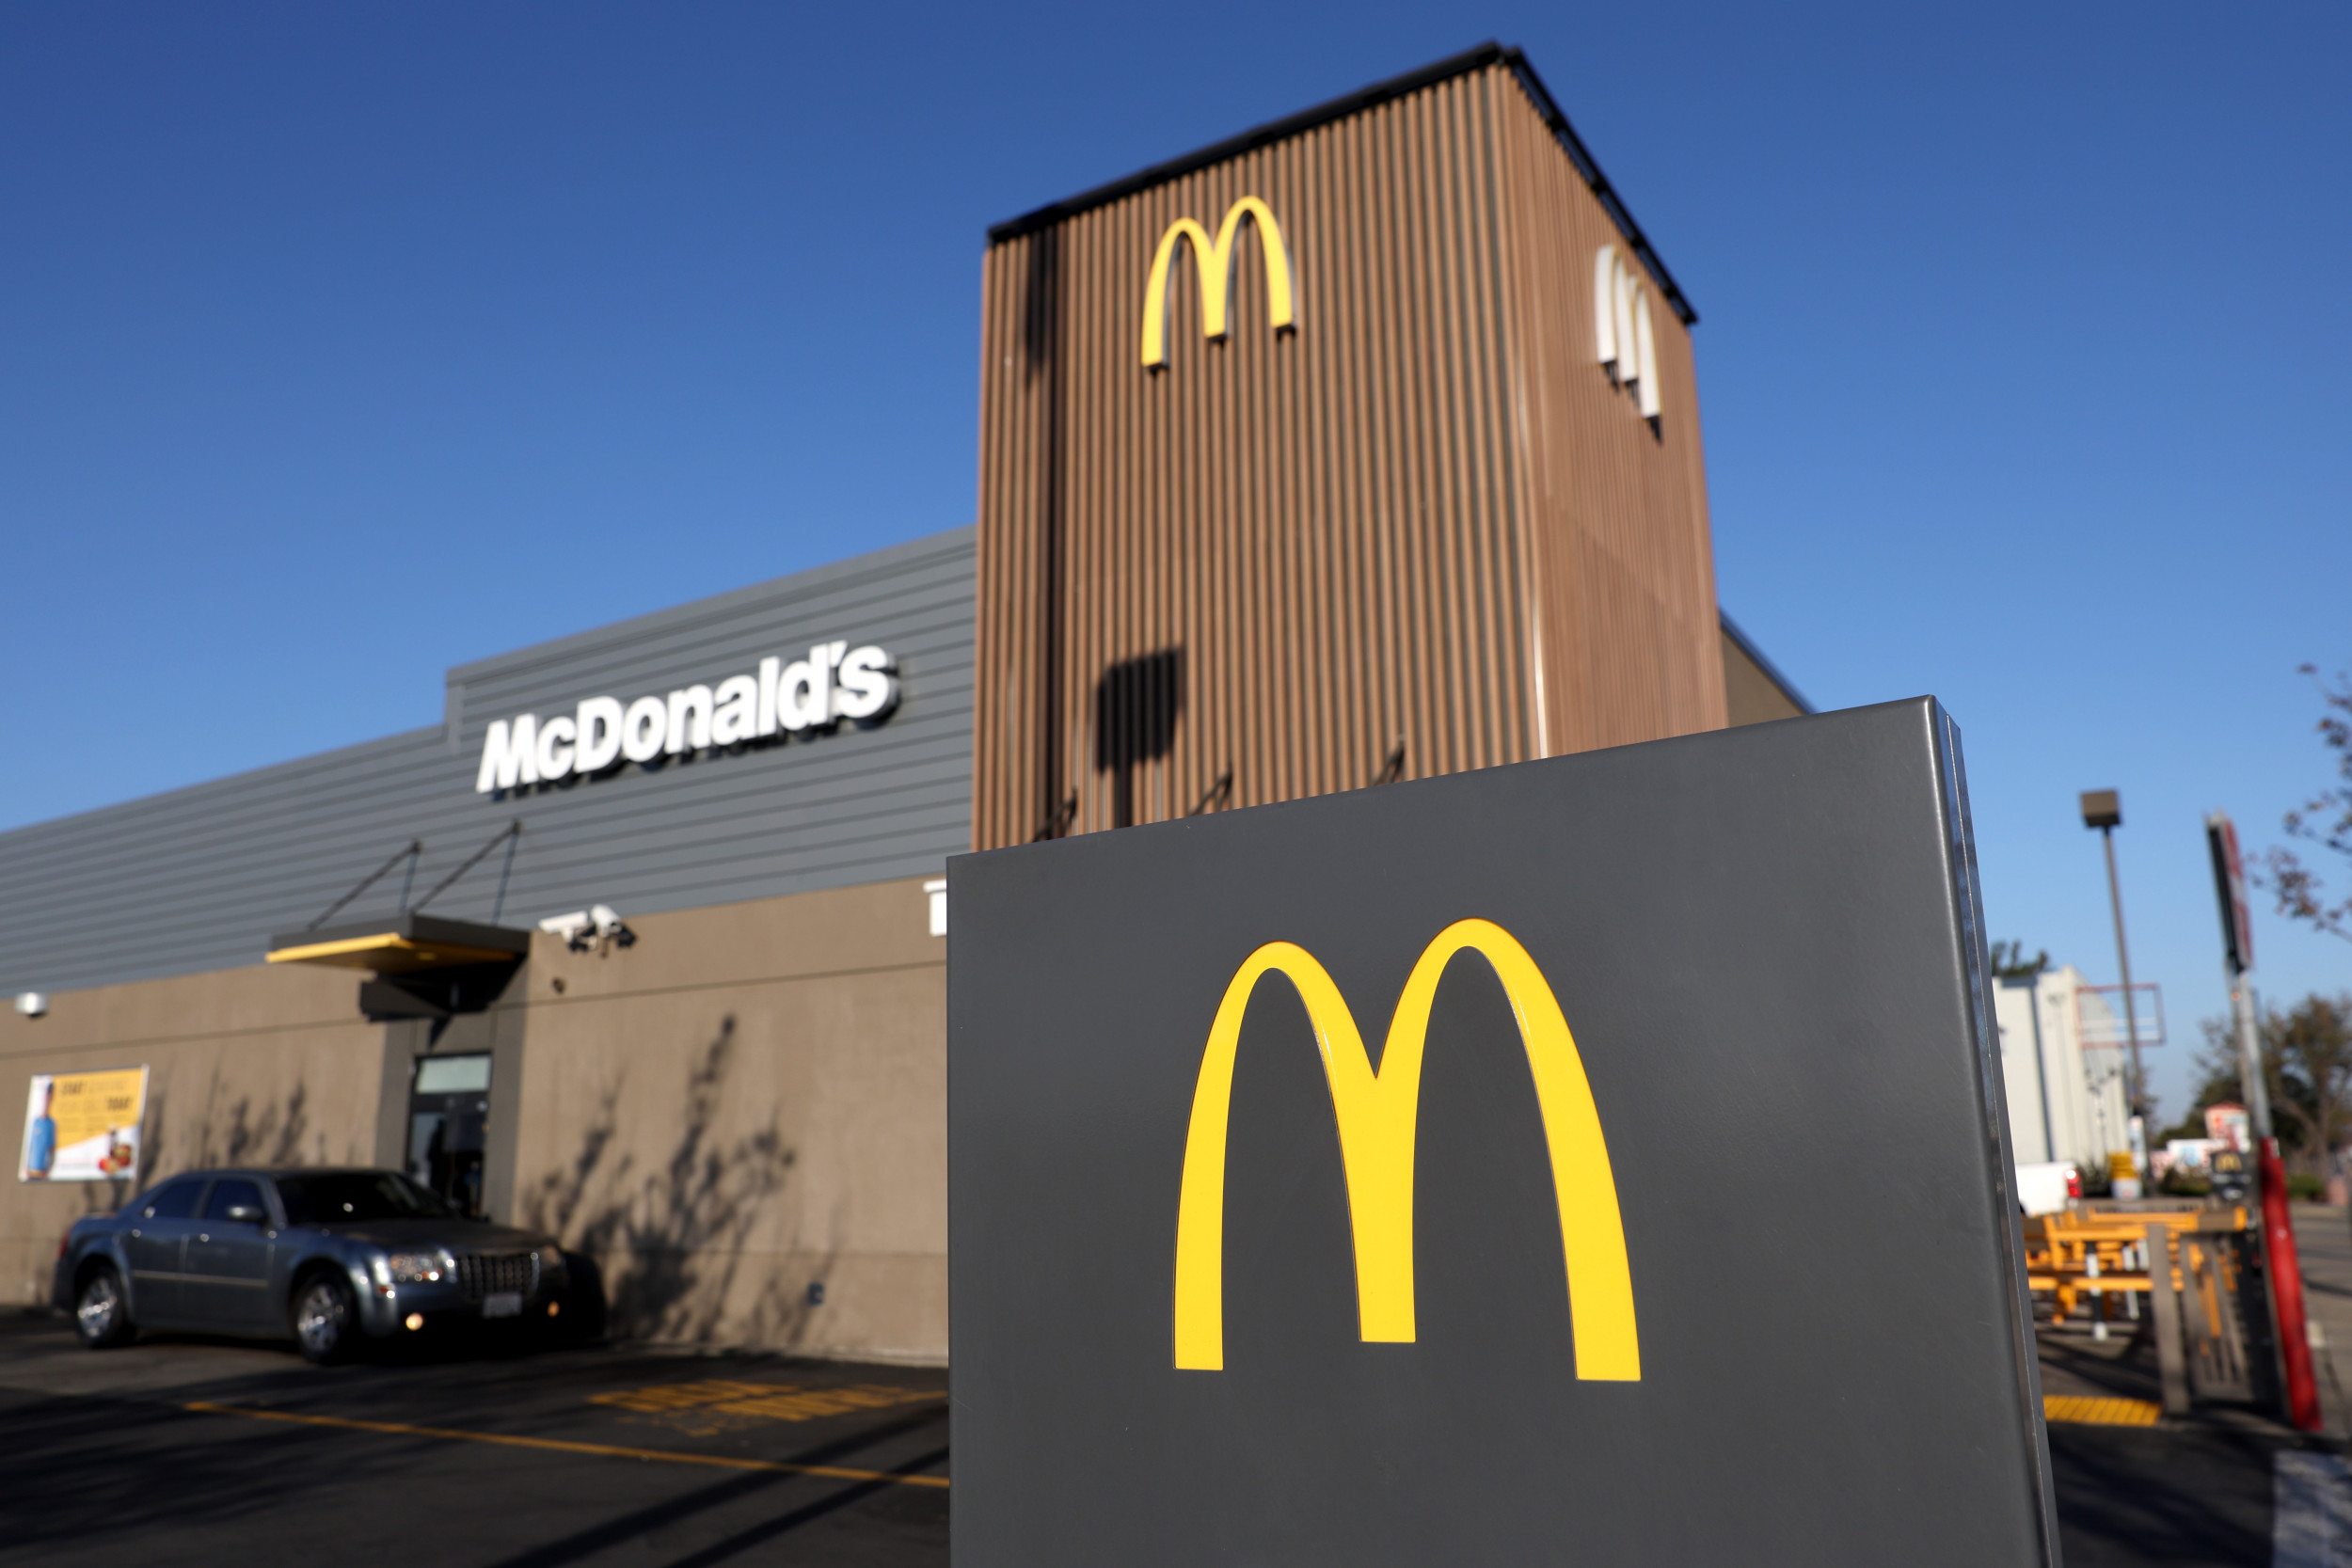 Broken Ice Cream Machines Lead to 900 Million Lawsuit Against McDonald's